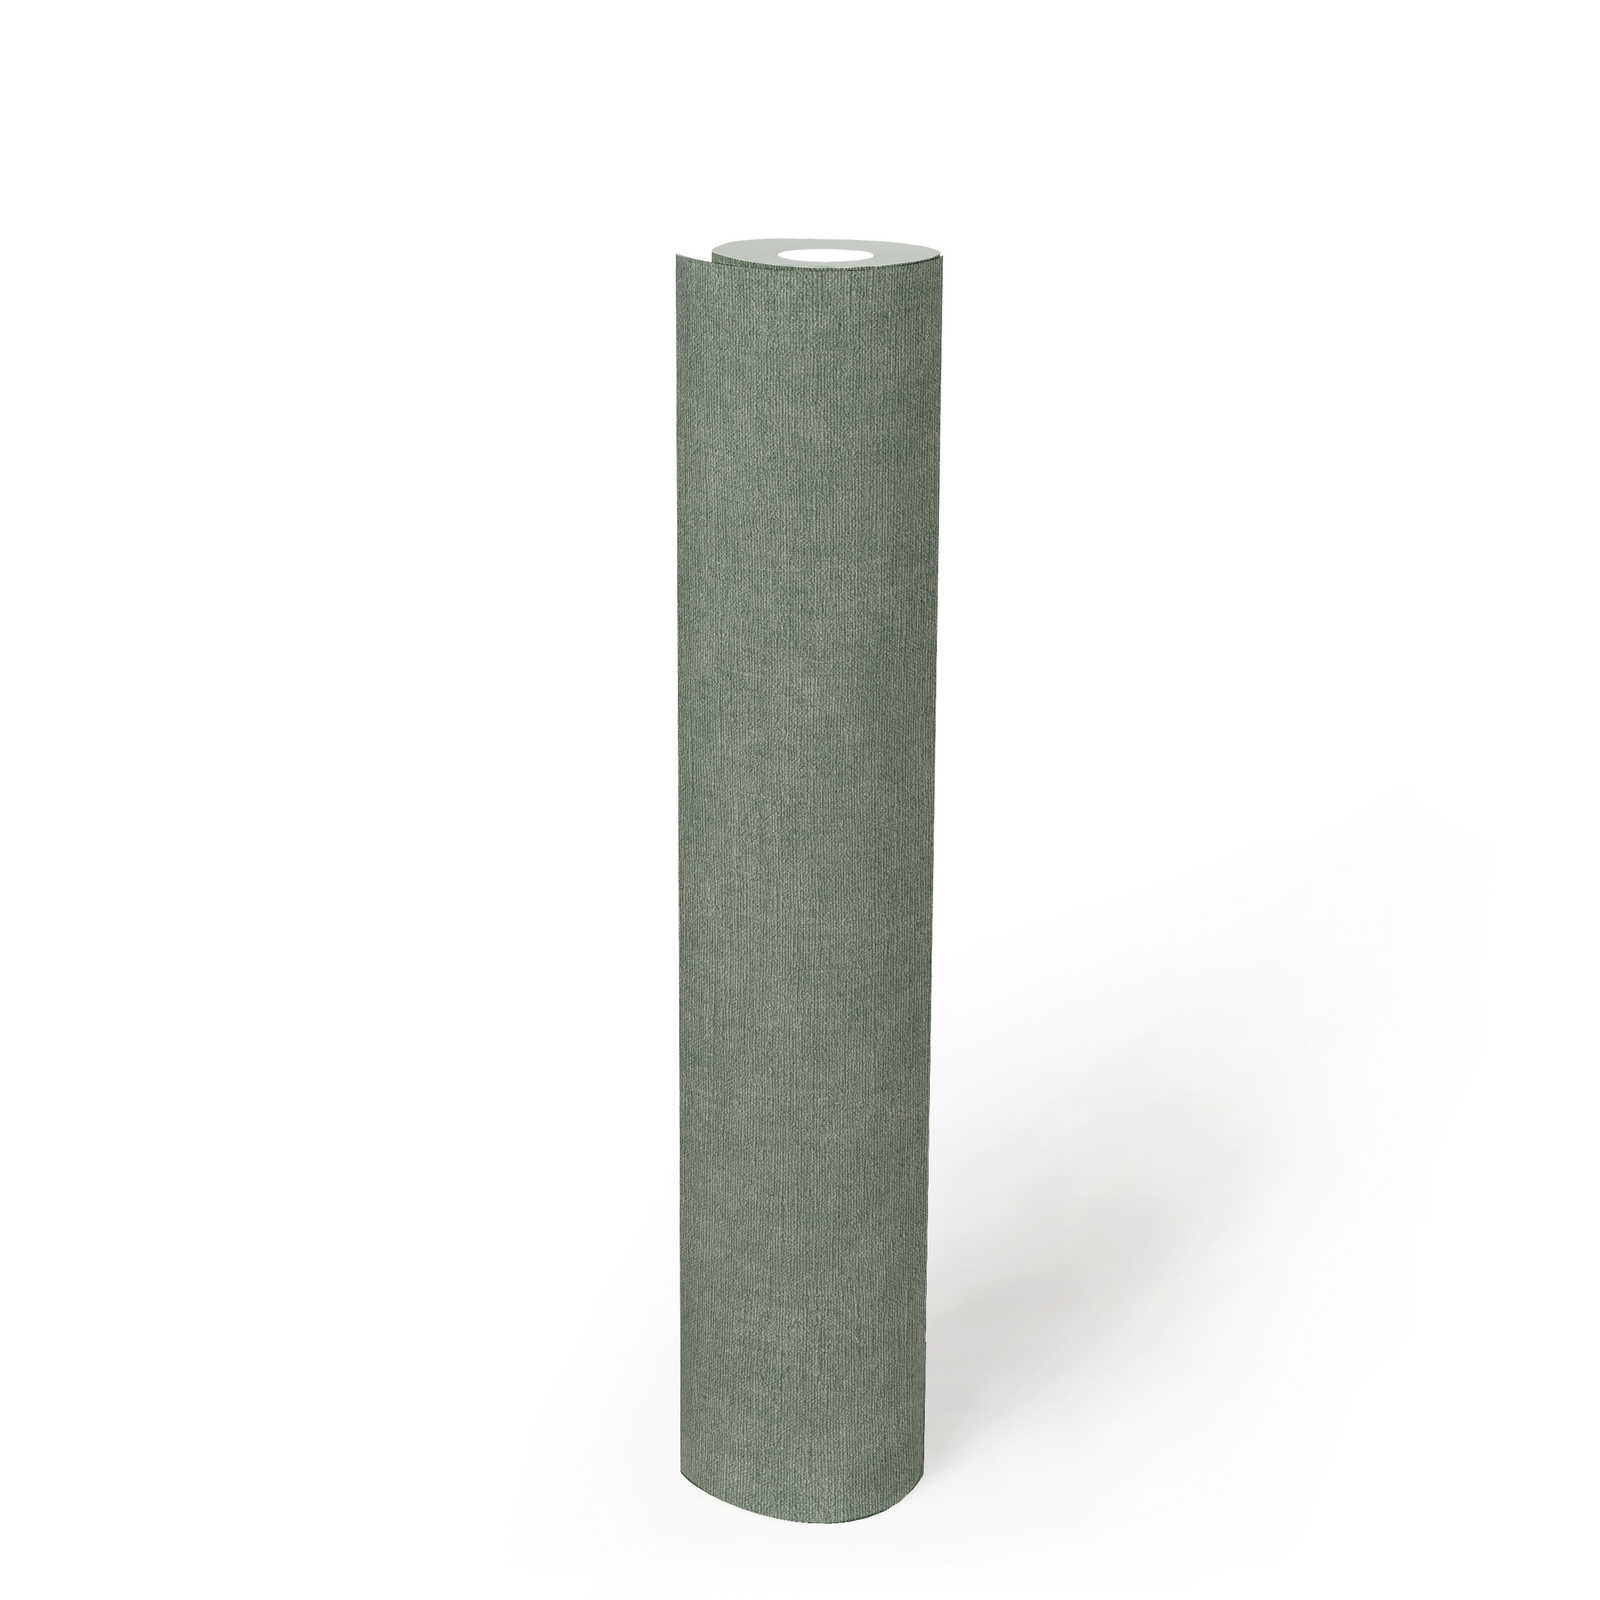             Unitapete leicht strukturiert in Textiloptik – Grün, Grau
        